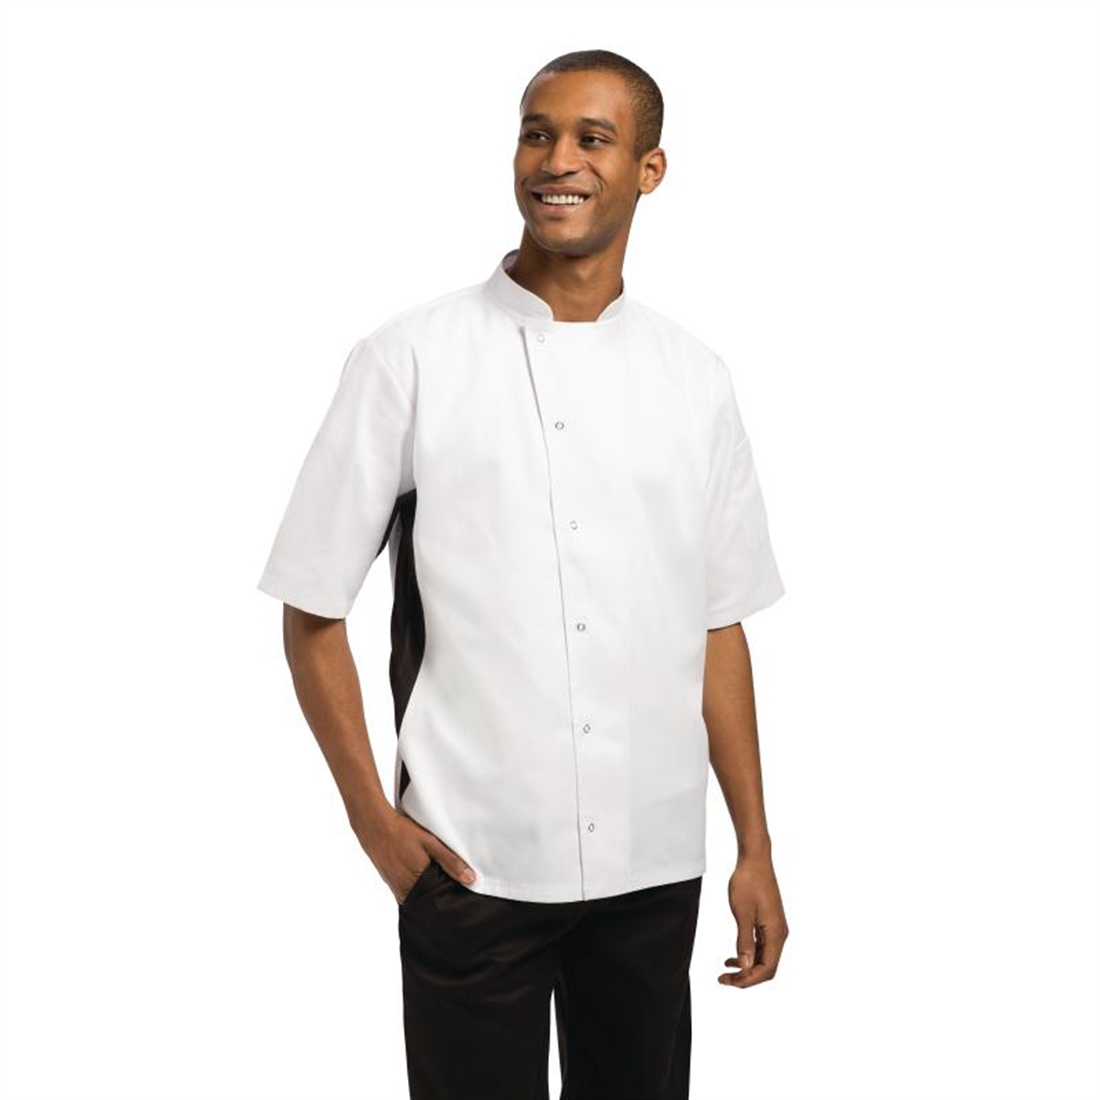 Whites Nevada White Unisex Chef's Jacket